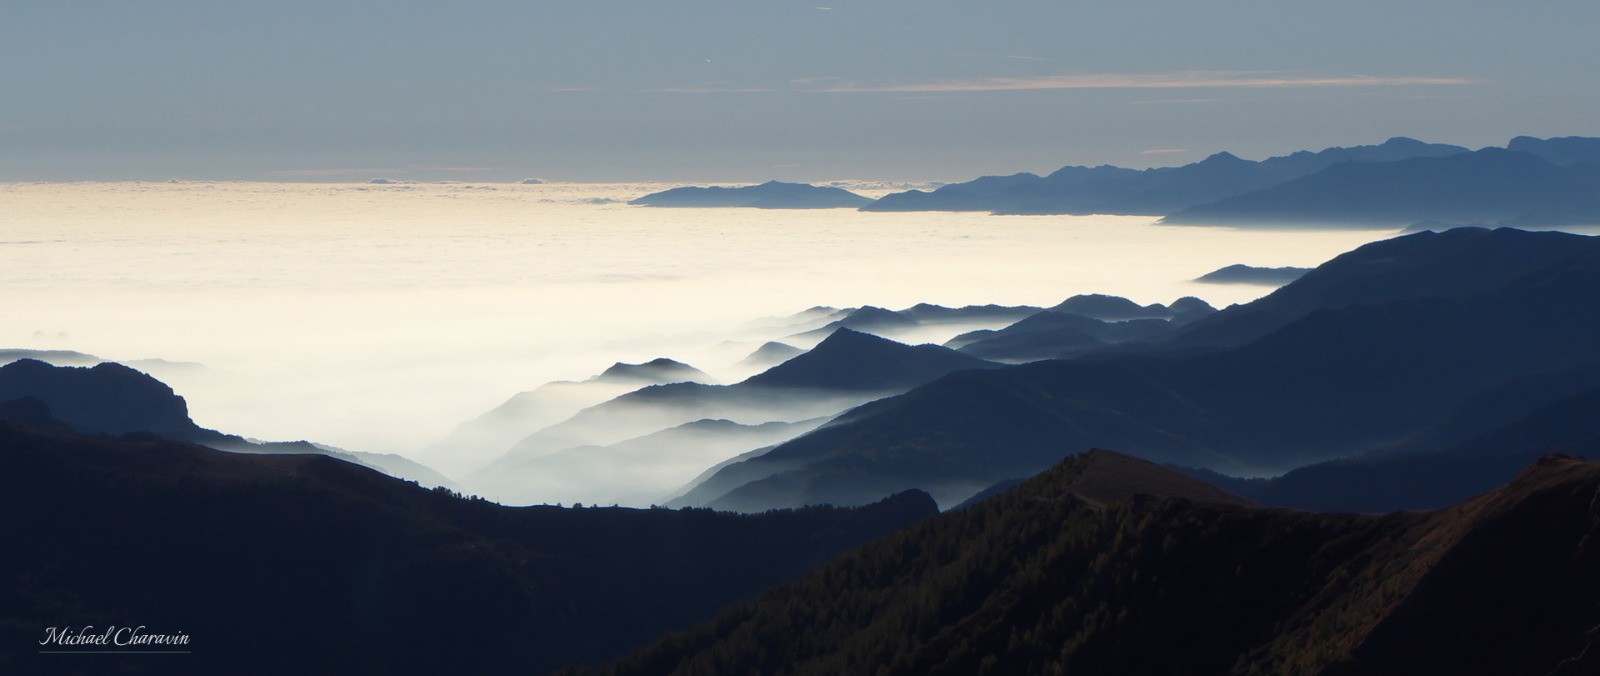 Bien en-dessous de nous, la nebbia (mer de nuage caractéristique du Piémont) occulte le fond des vallées tel un tapis d'ouate. 